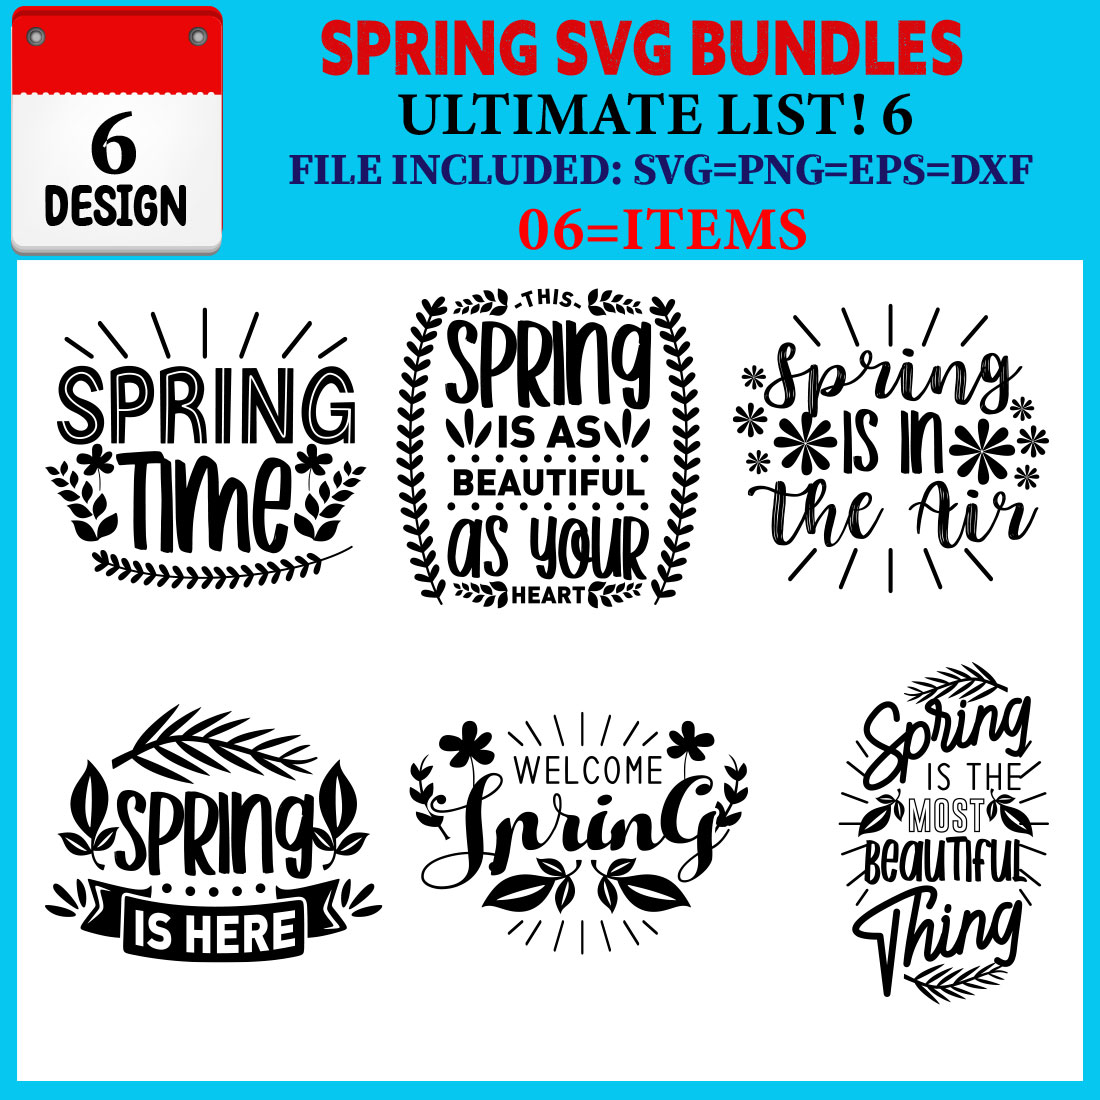 Spring T-shirt Design Bundle Vol-05 cover image.